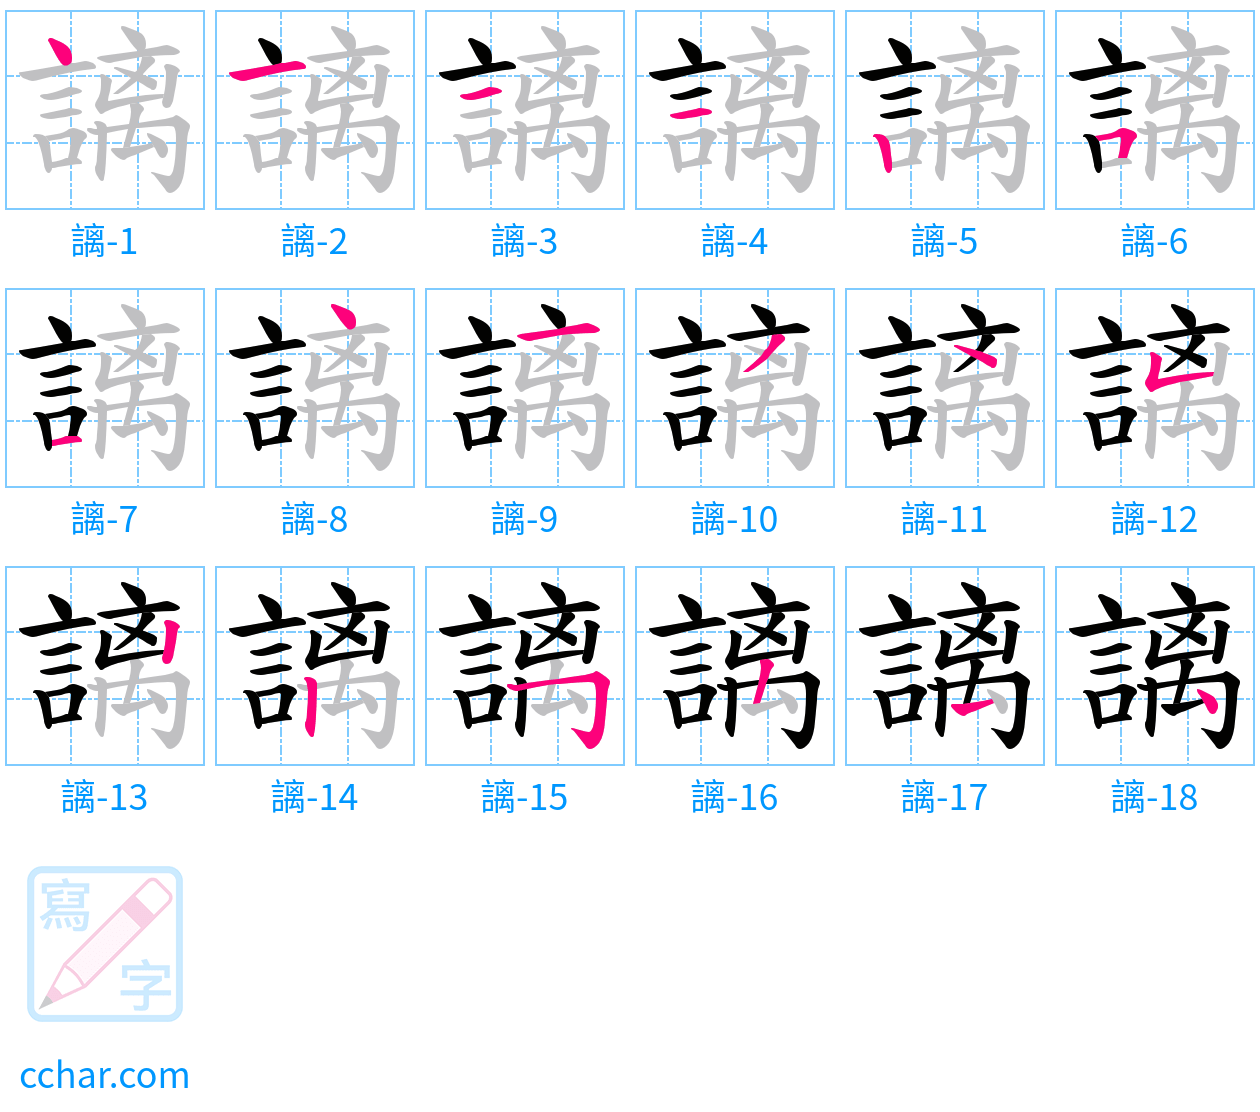 謧 stroke order step-by-step diagram